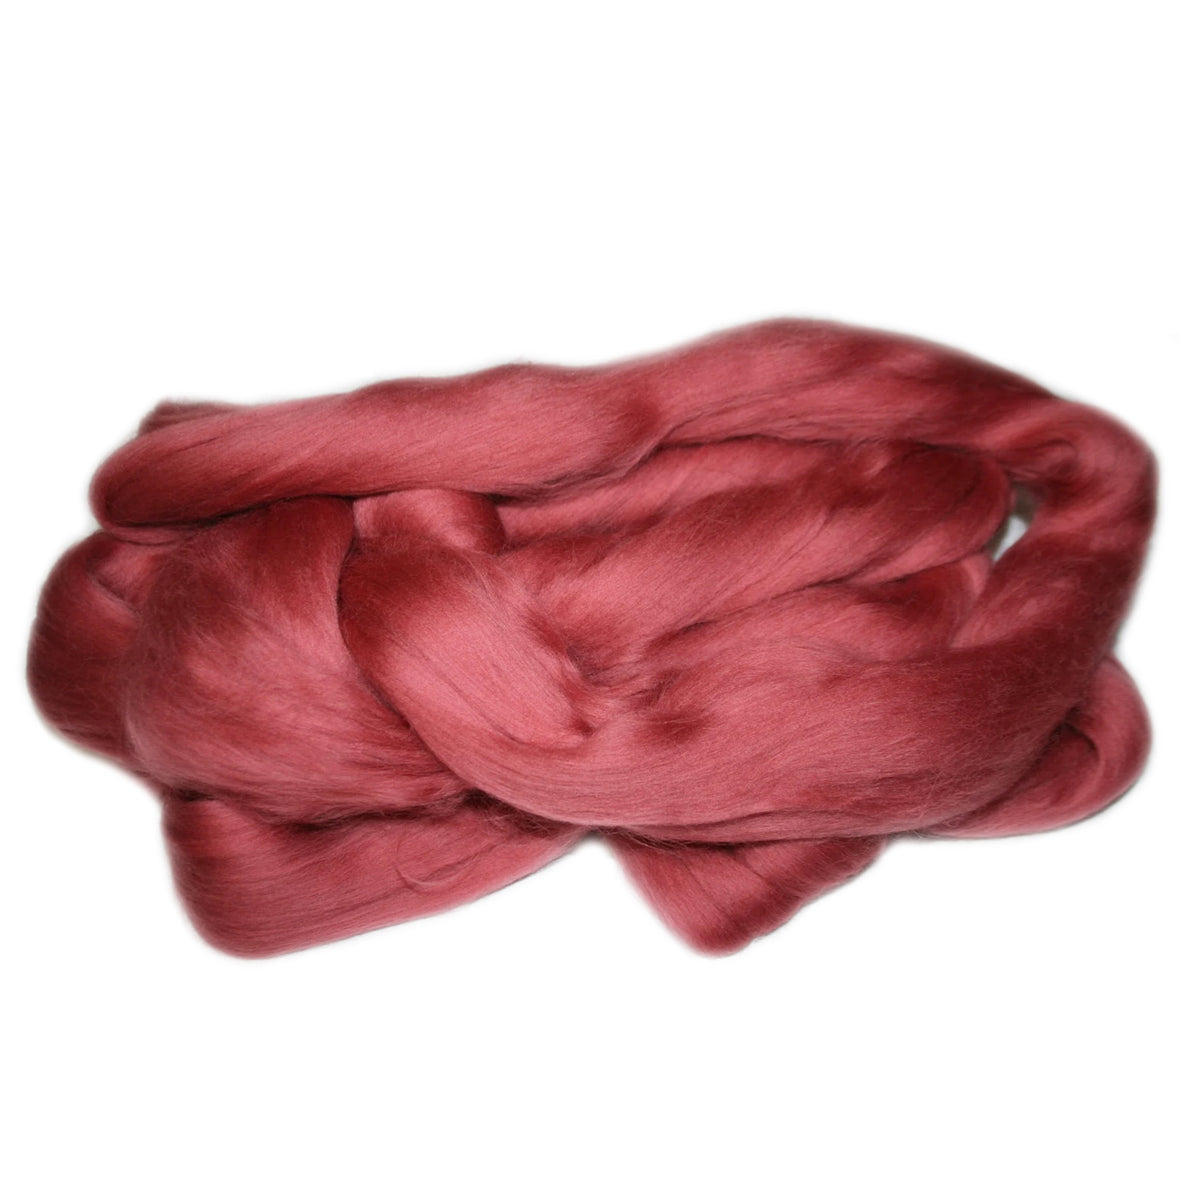 Merino Wool Top Rhubarb 950g